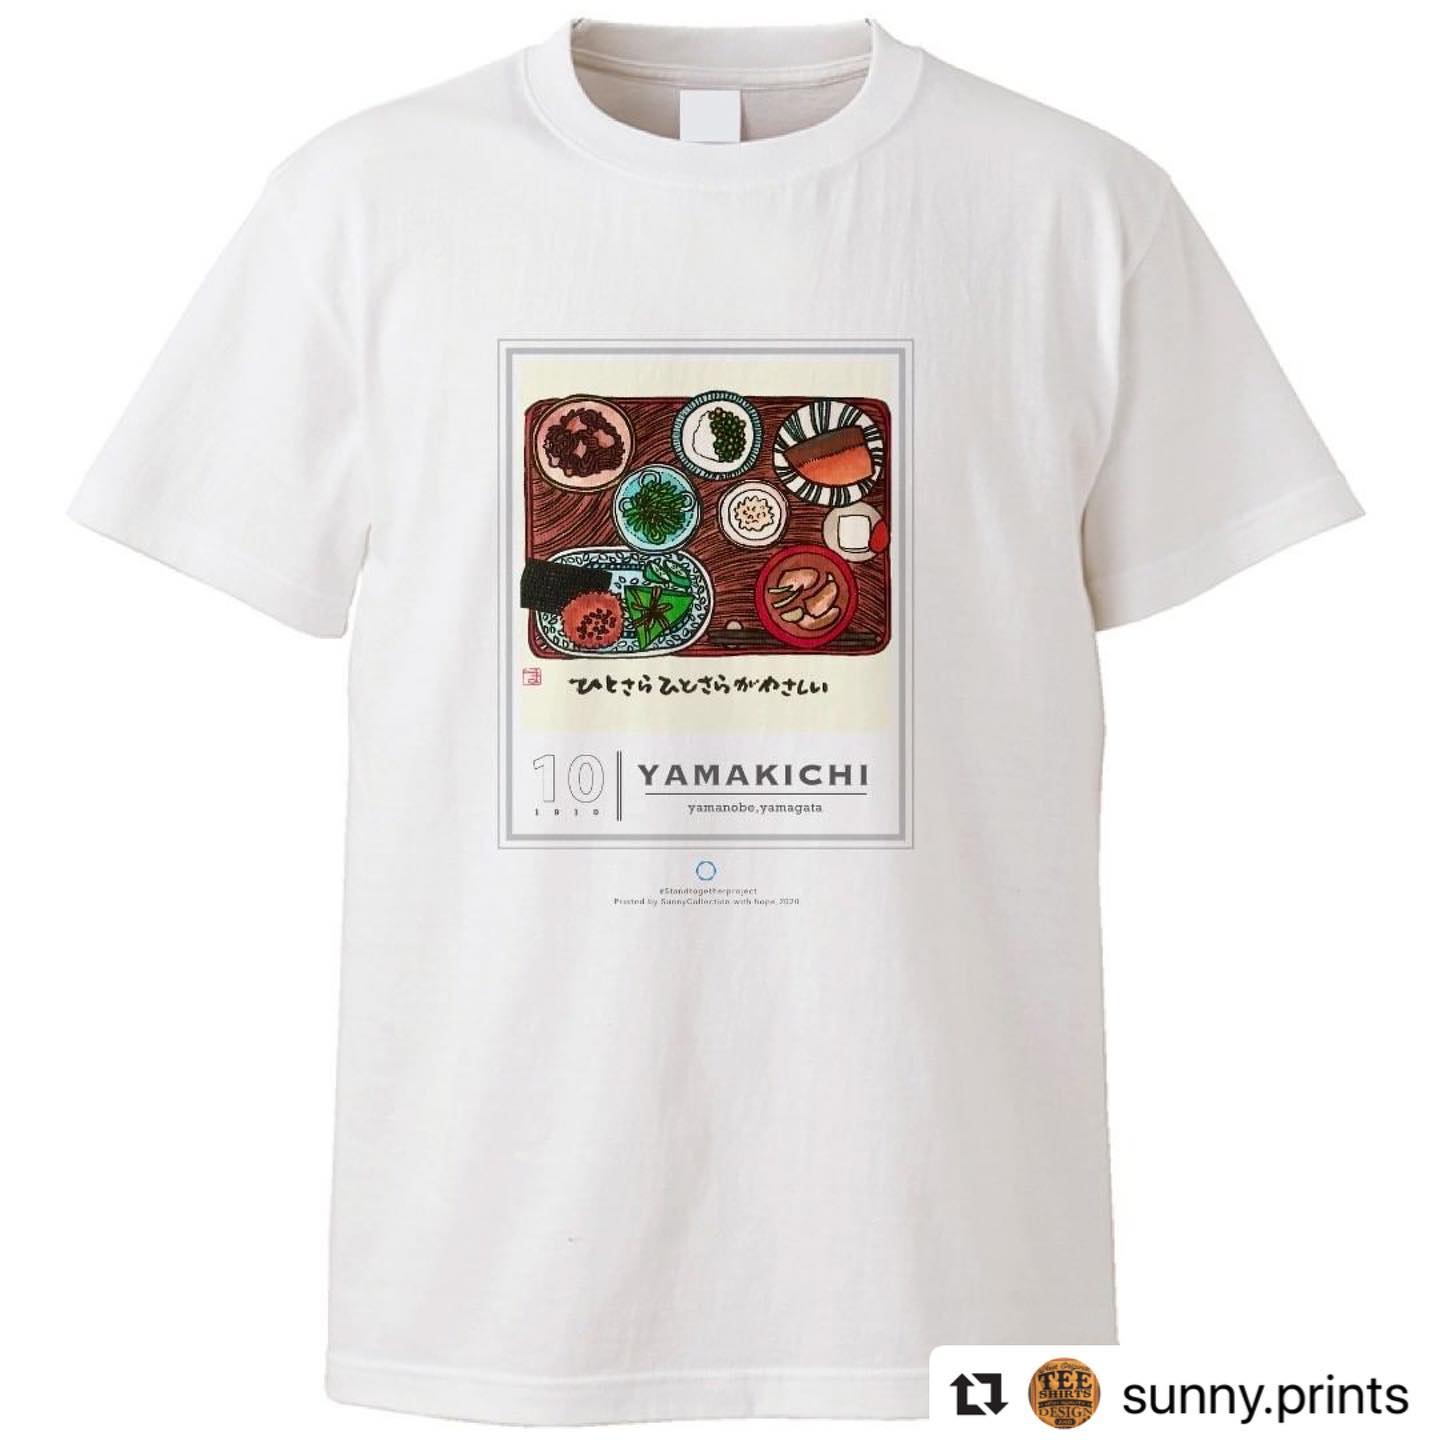 ヤマキチTシャツを着て
昼ごはんをどうぞ @sunny.prints with @make_repost
・・・
お惣菜とお食事の店 ヤマキチ様のTシャツ。

@yamakichimiso 
このTシャツを着用してこのお店に行くと、下記の特典があります。

還元内容：初回のお客さまランチ半額。2回目以降からは食後のコーヒーサービス。※2020年11月末まで

お店から：ヤマキチのやさしい一皿で笑顔と元気になりますように。
お買い求めは下記URL又はプロフィールのURLからどうぞ。

http://sunnycollection.jp/?pid=150722464